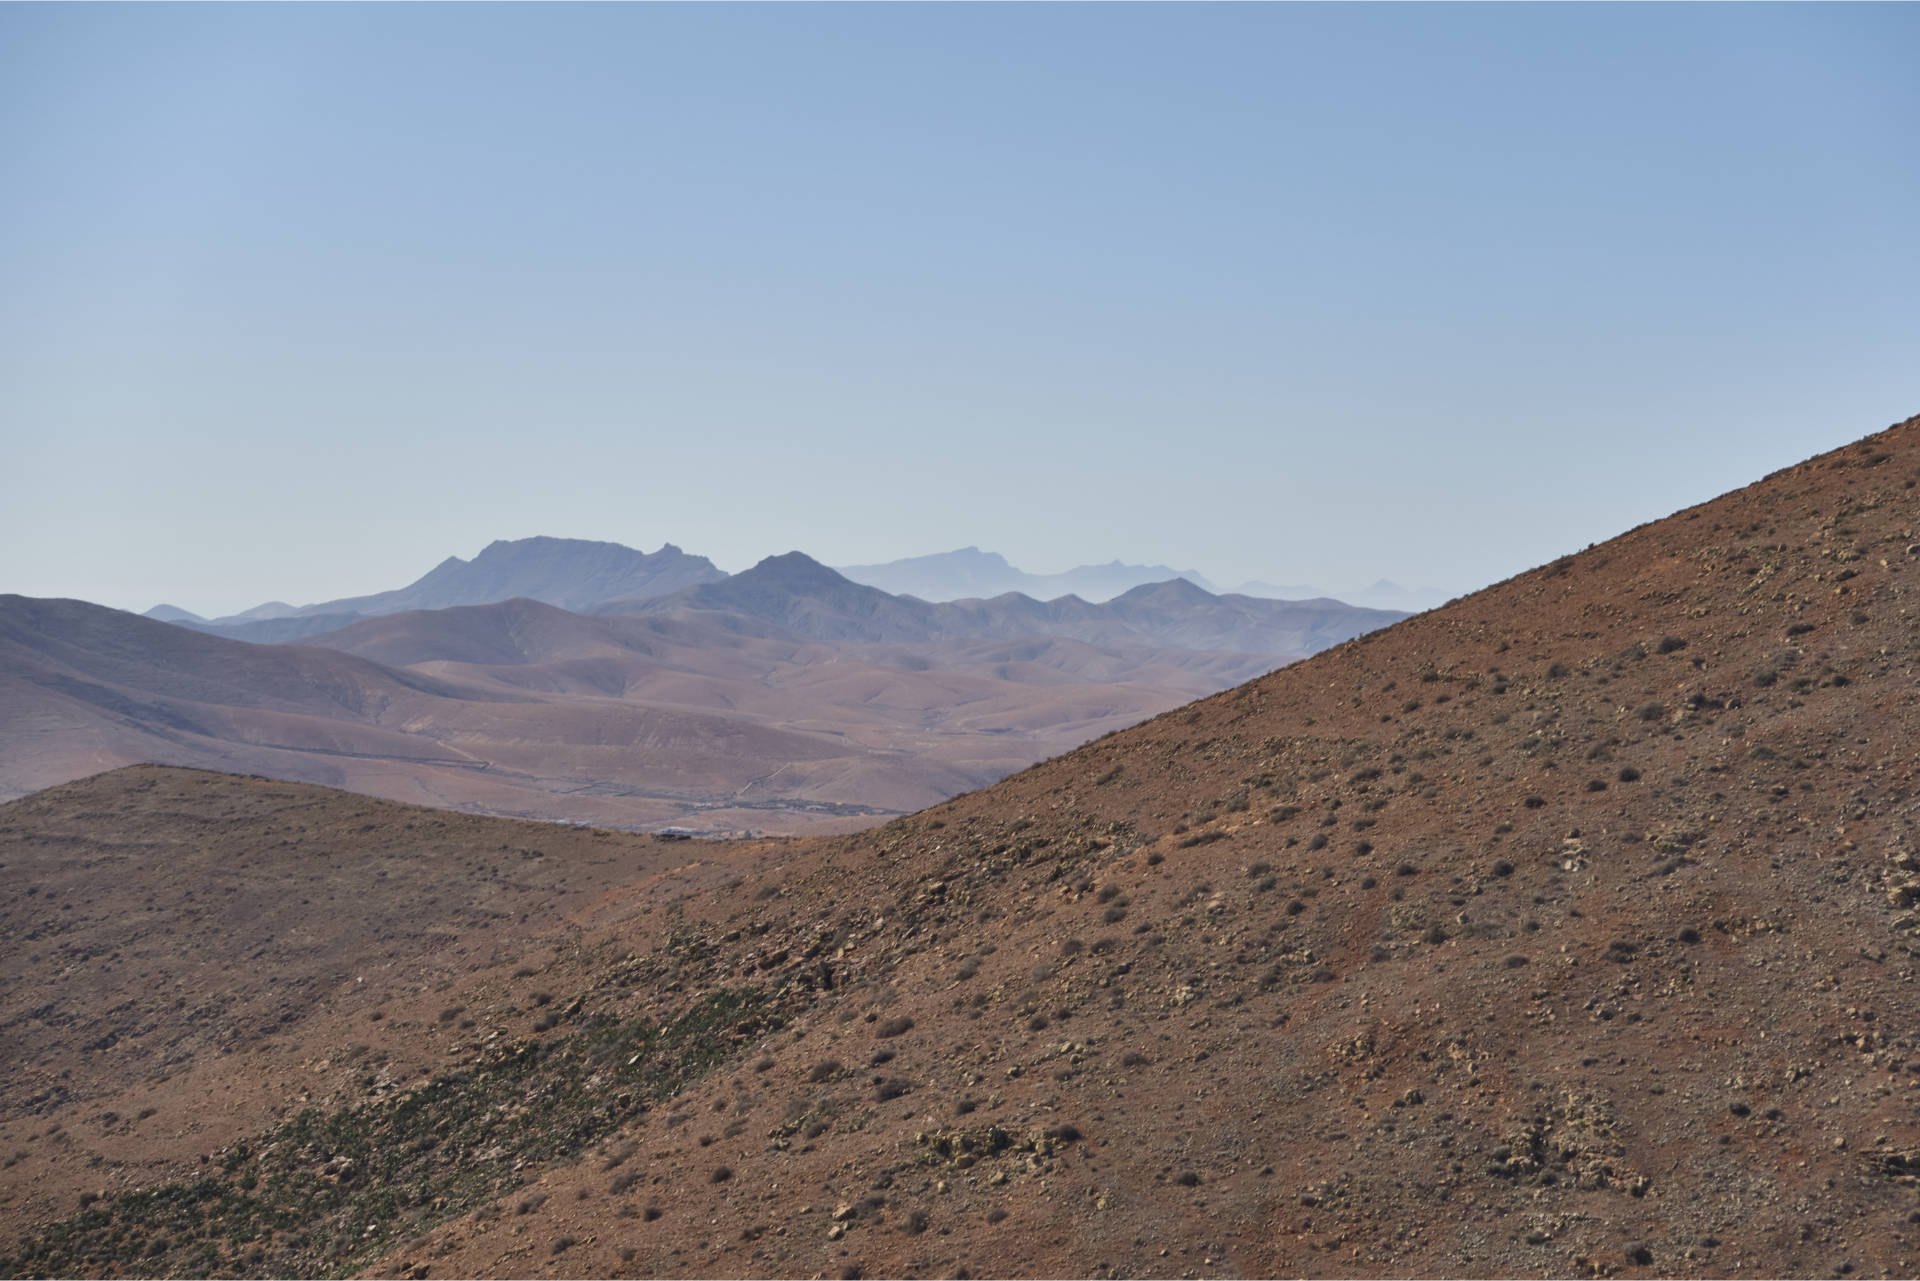 Weitblicke nach Süden: Links Montaña Cardón (694 m), in der Mitte Morro del Medio de la Caldera (562 m), weit in der Ferne Pico de la Zarza (817 m).